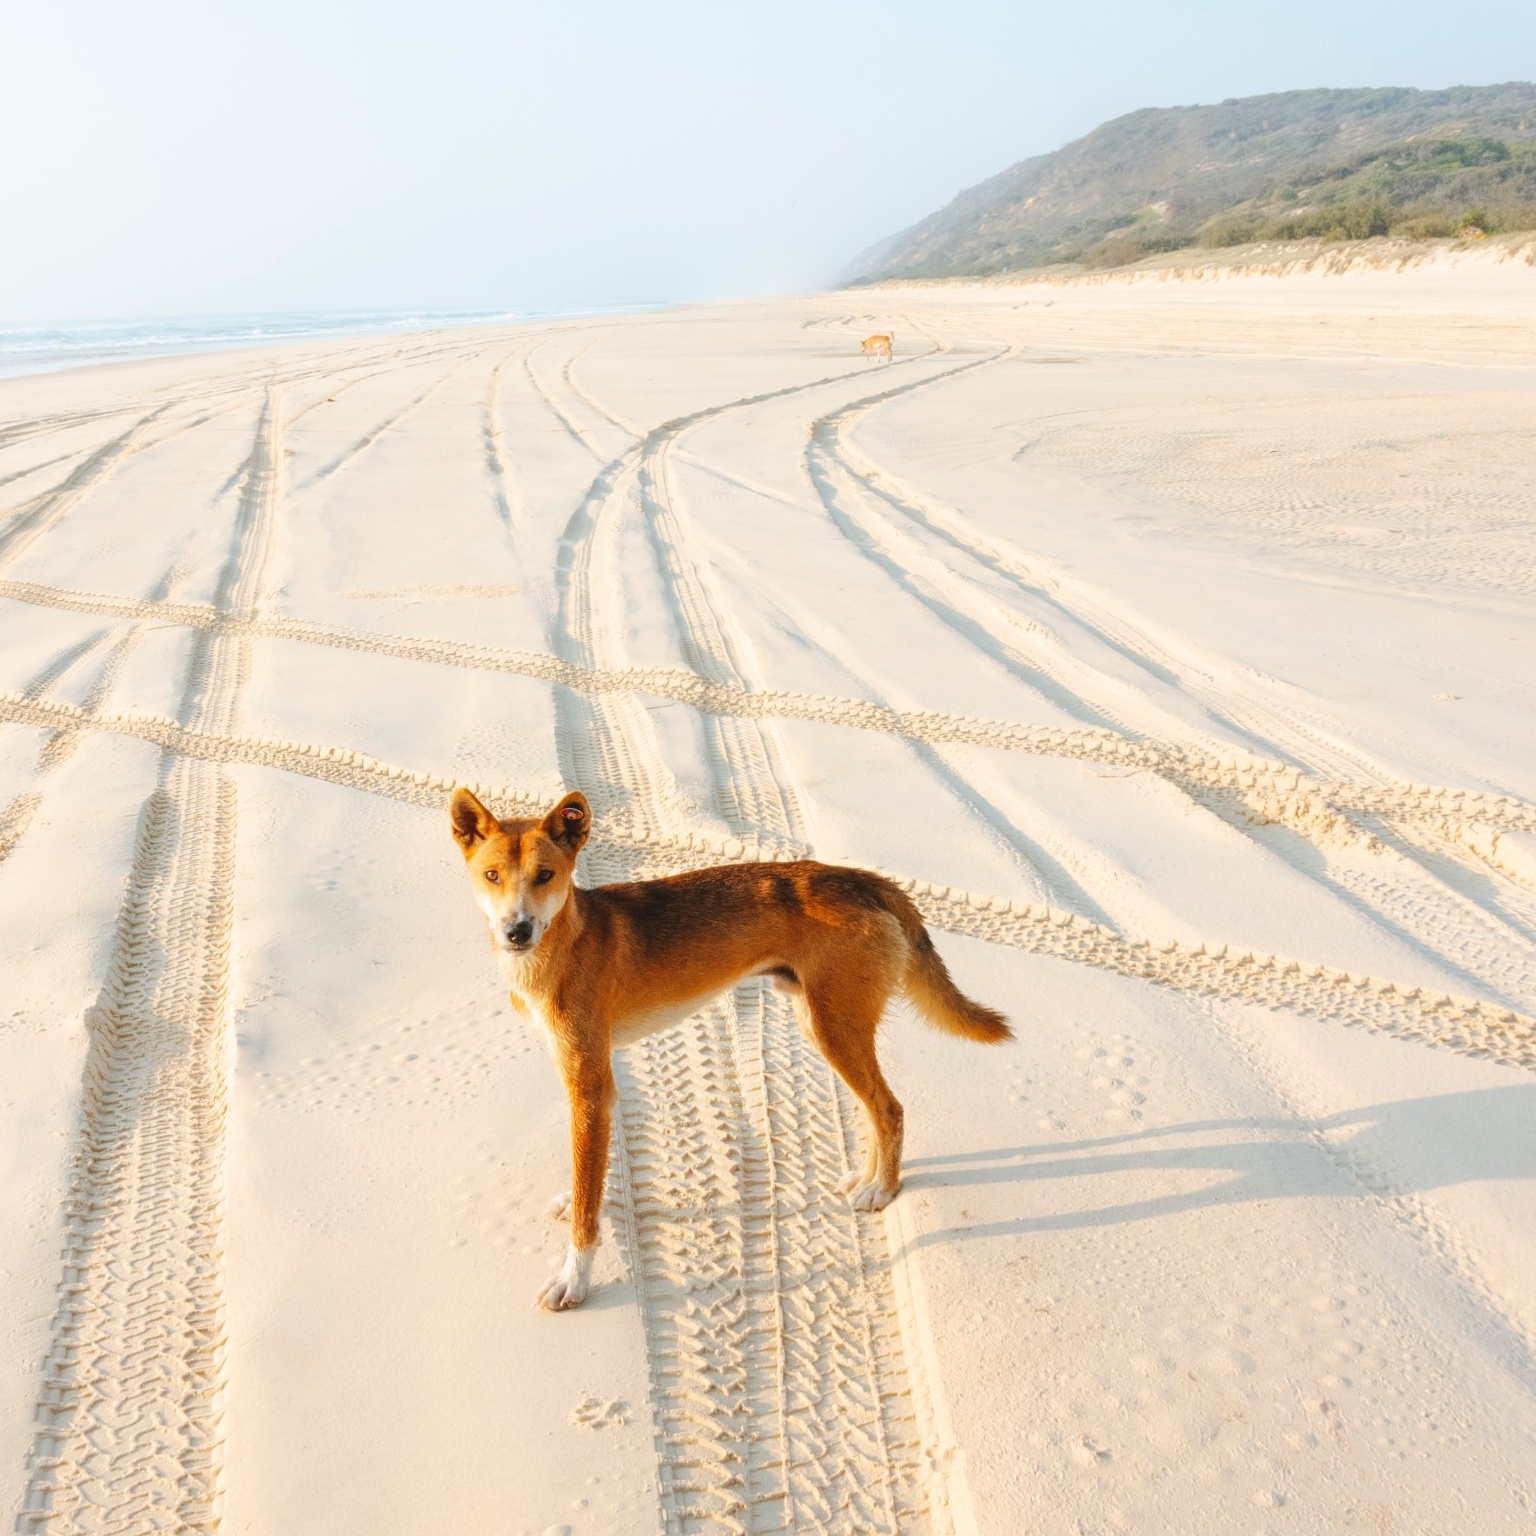 费沙岛海滩上的澳大利亚丁狗 © 昆士兰州旅游及活动推广局版权所有